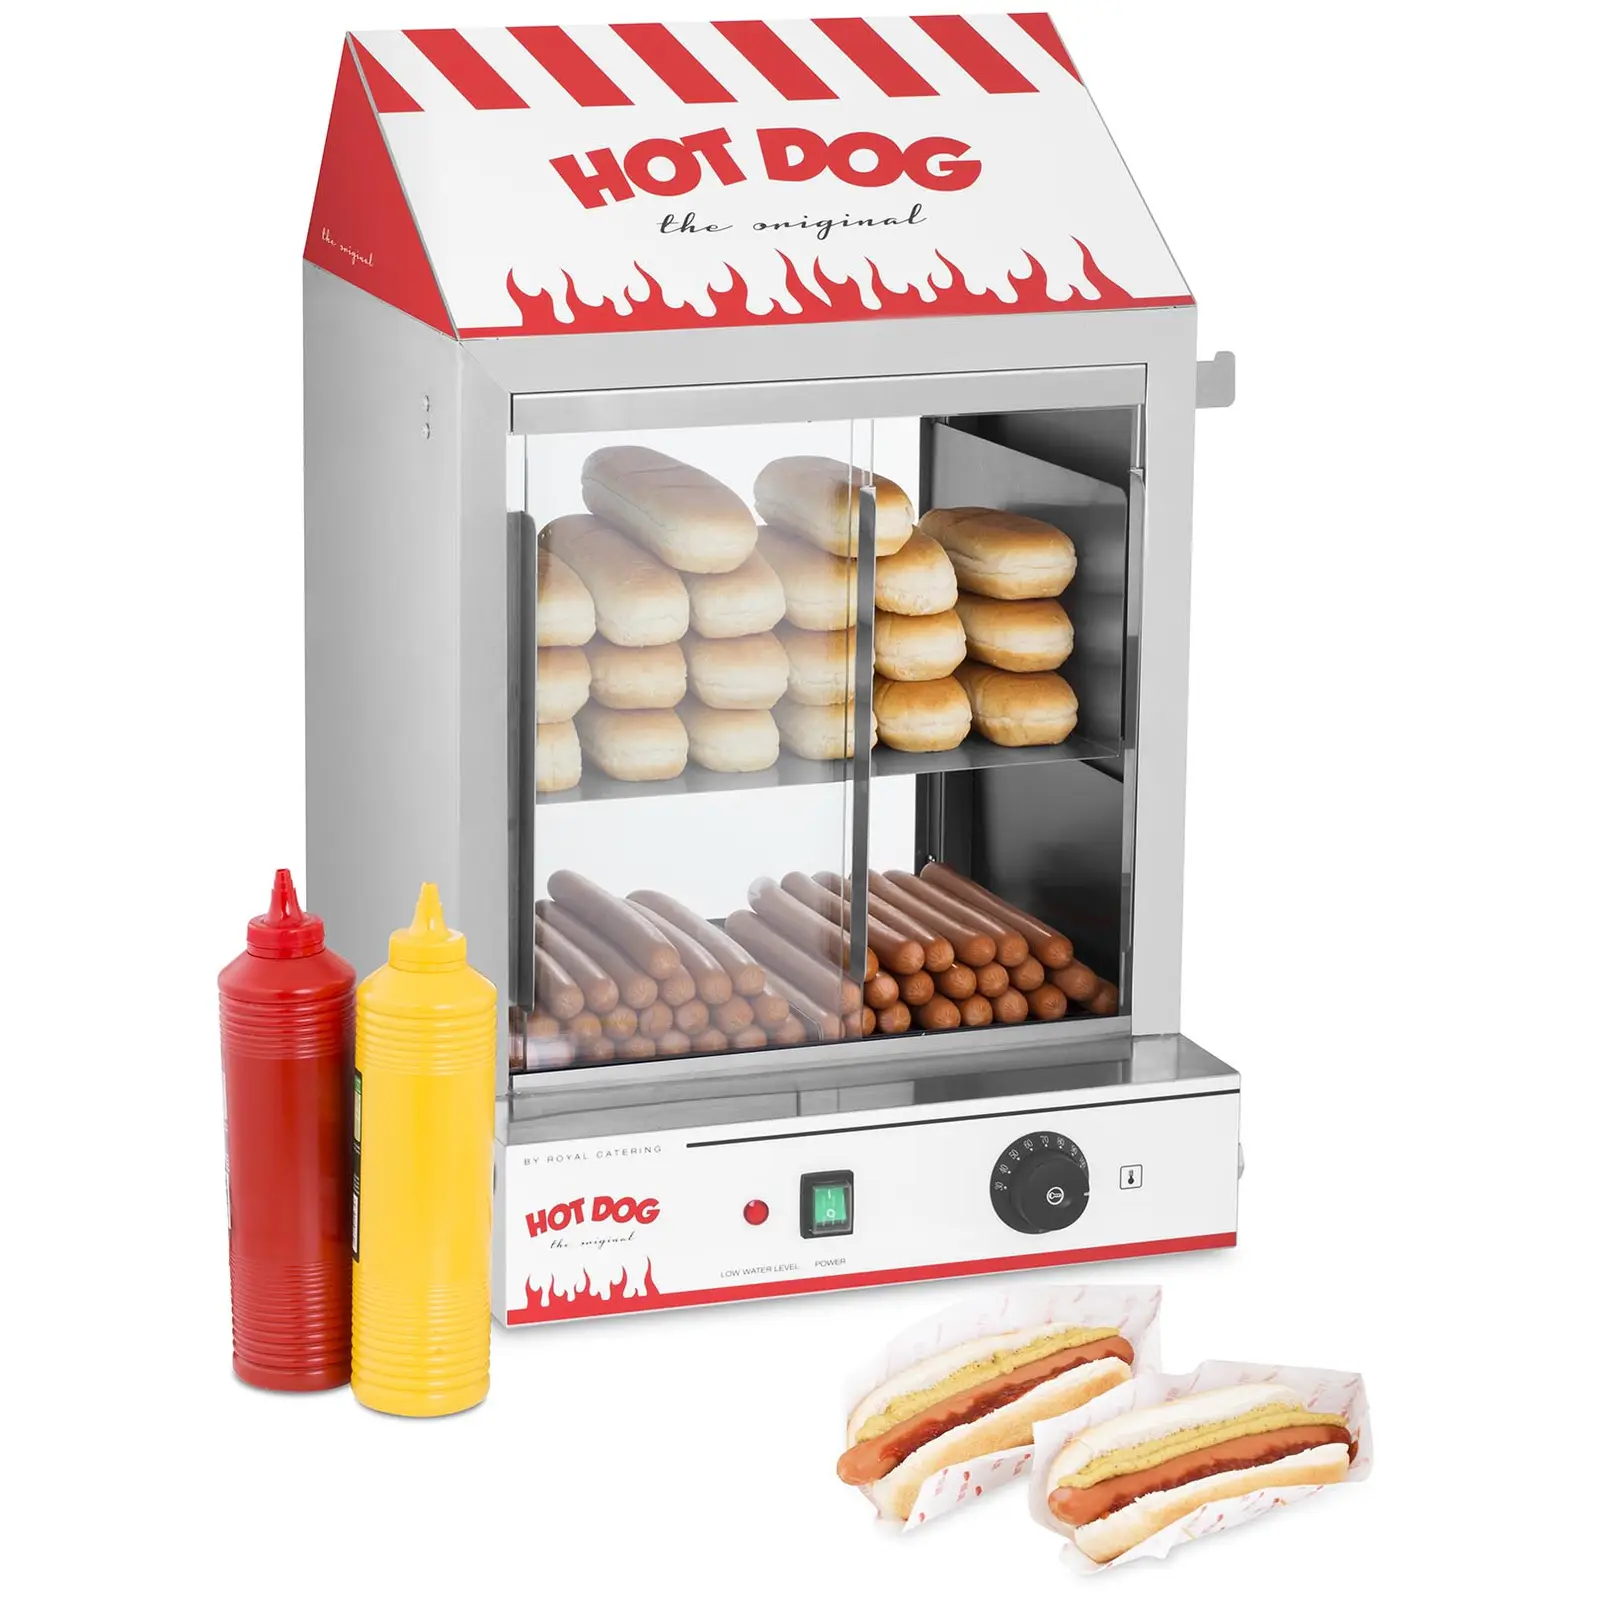 Macchina per hot dog a vapore - 2.000 W